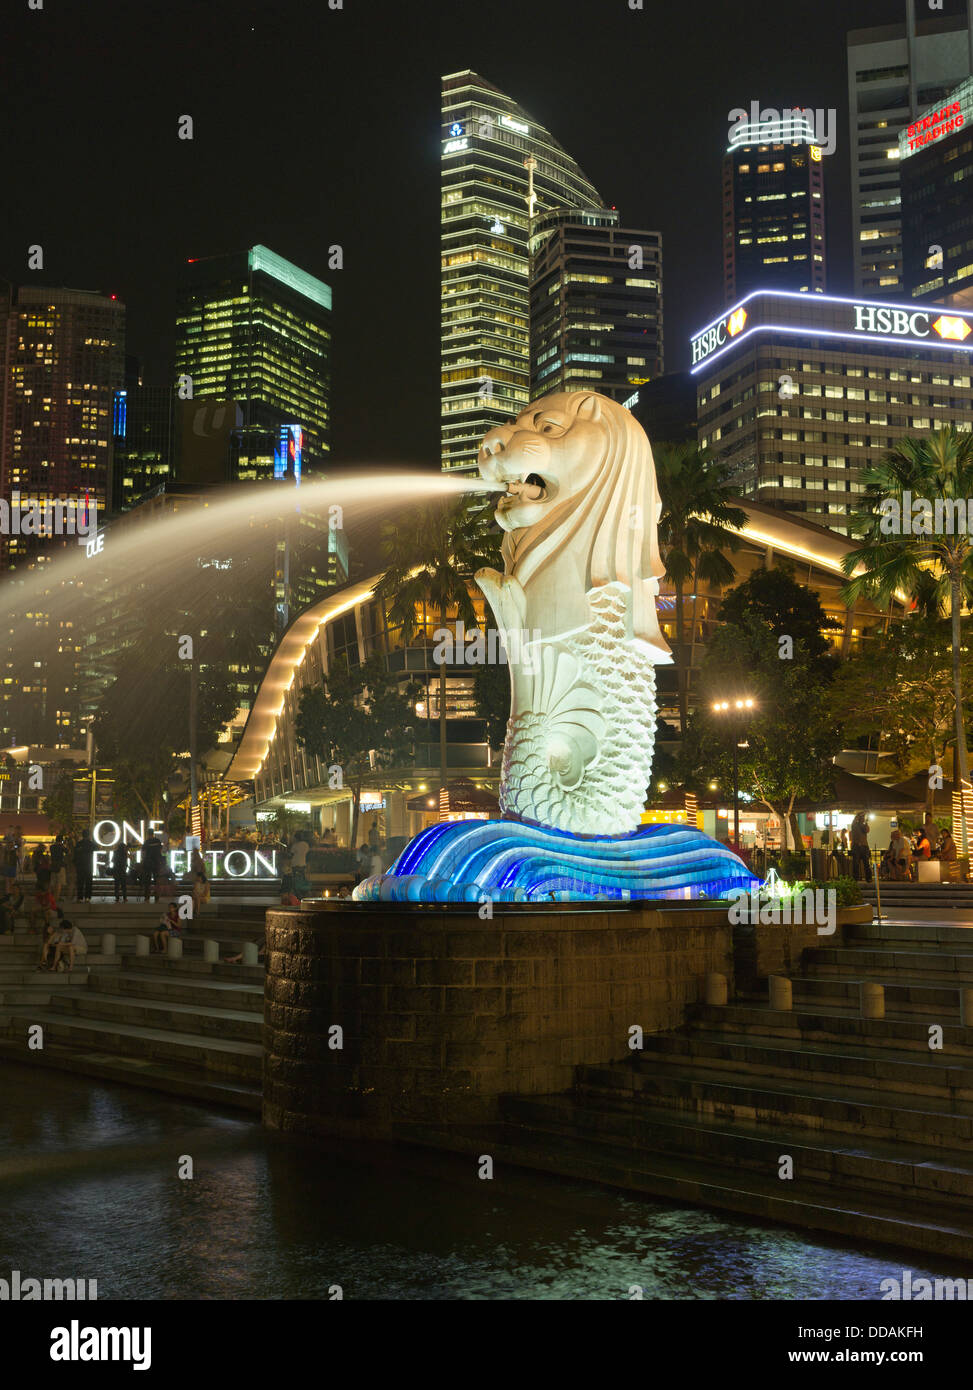 Dh du Parc Merlion Merlion SINGAPOUR MARINA BAY nuit ville lumières statue fontaine skyscappers Banque D'Images